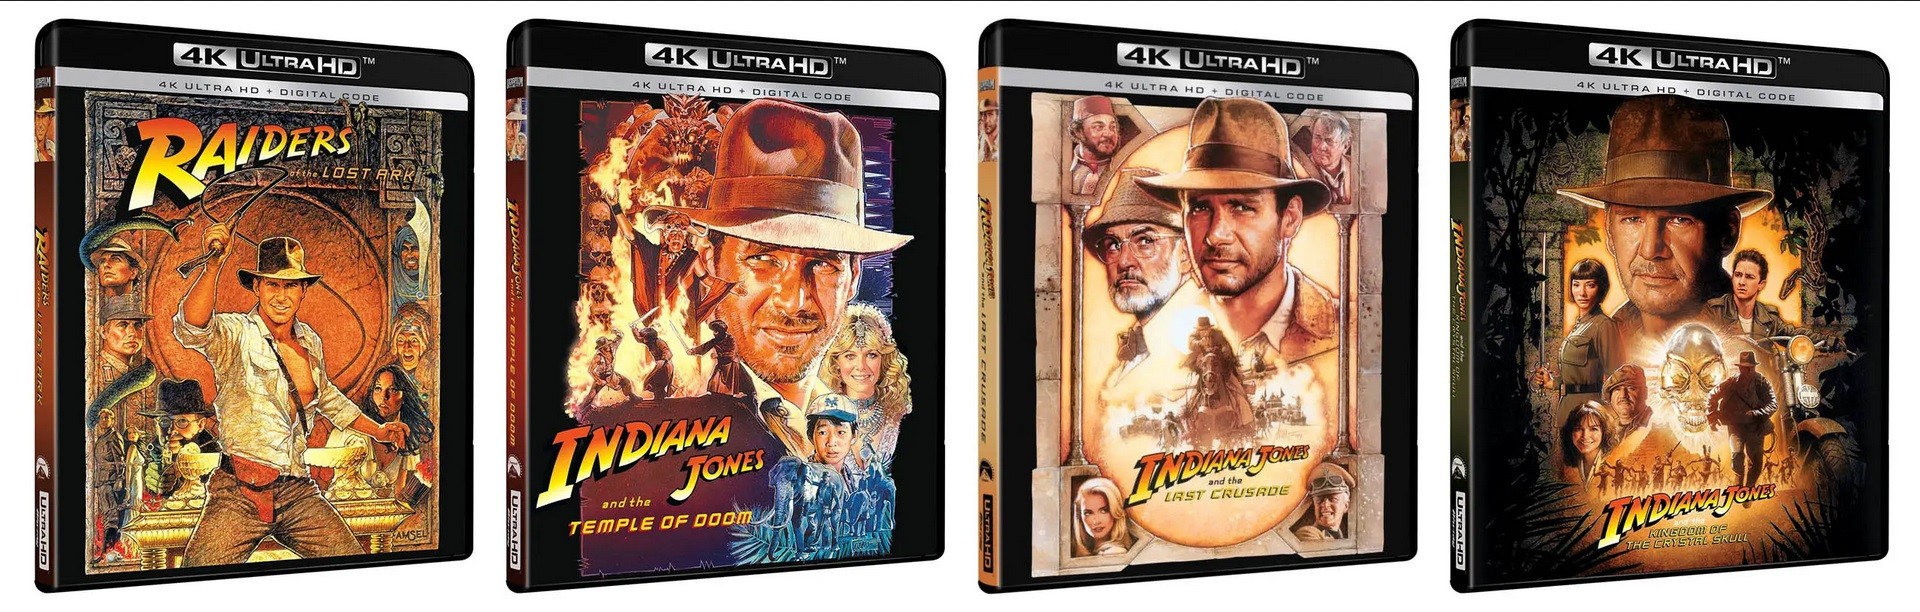 Indiana Jones Films Get Individual 4K UHD Releases This Summer - Cinelinx